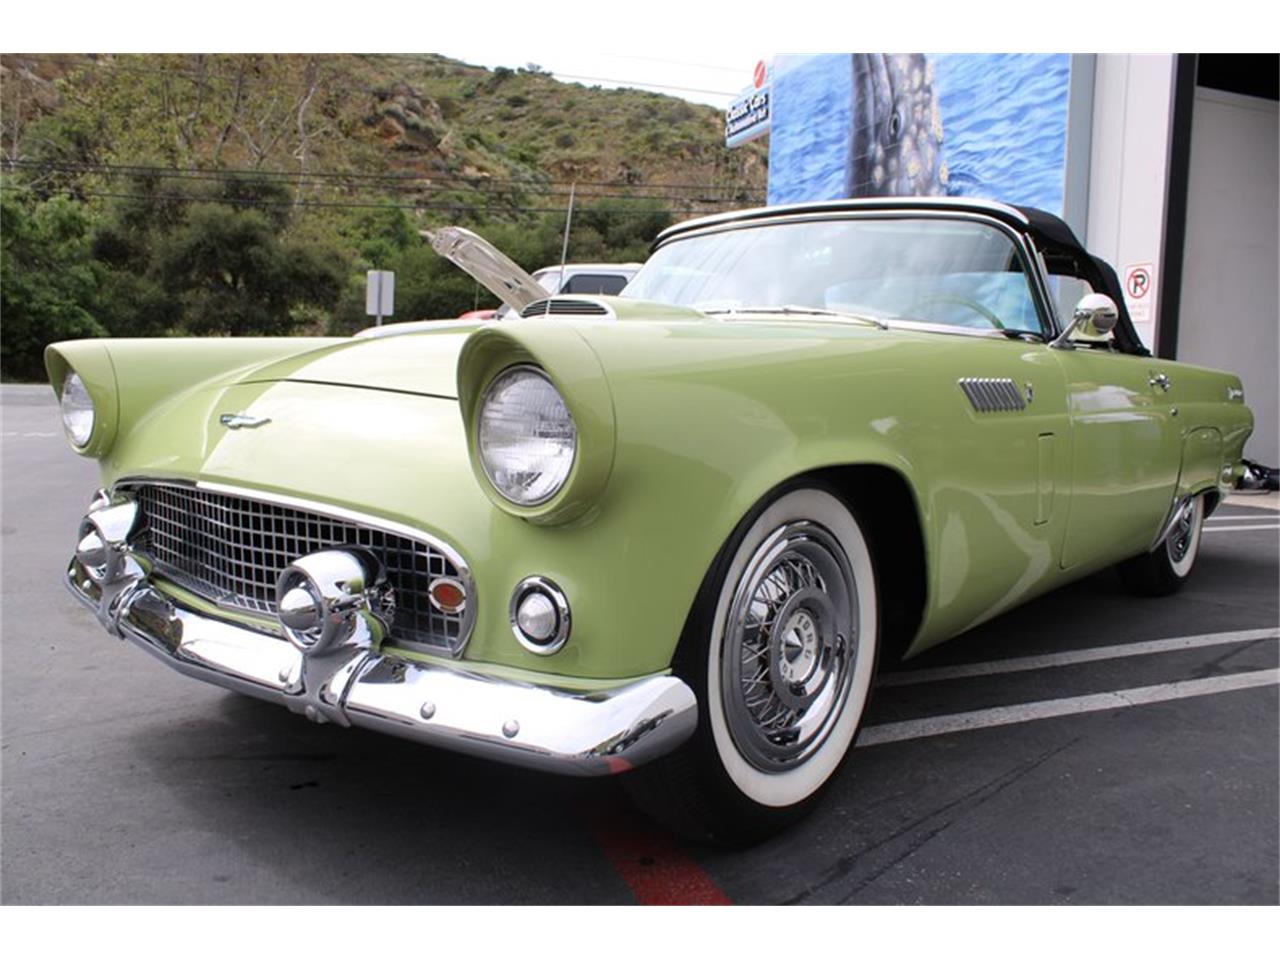 For Sale: 1956 Ford Thunderbird in Laguna Beach, California for sale in Laguna Beach, CA